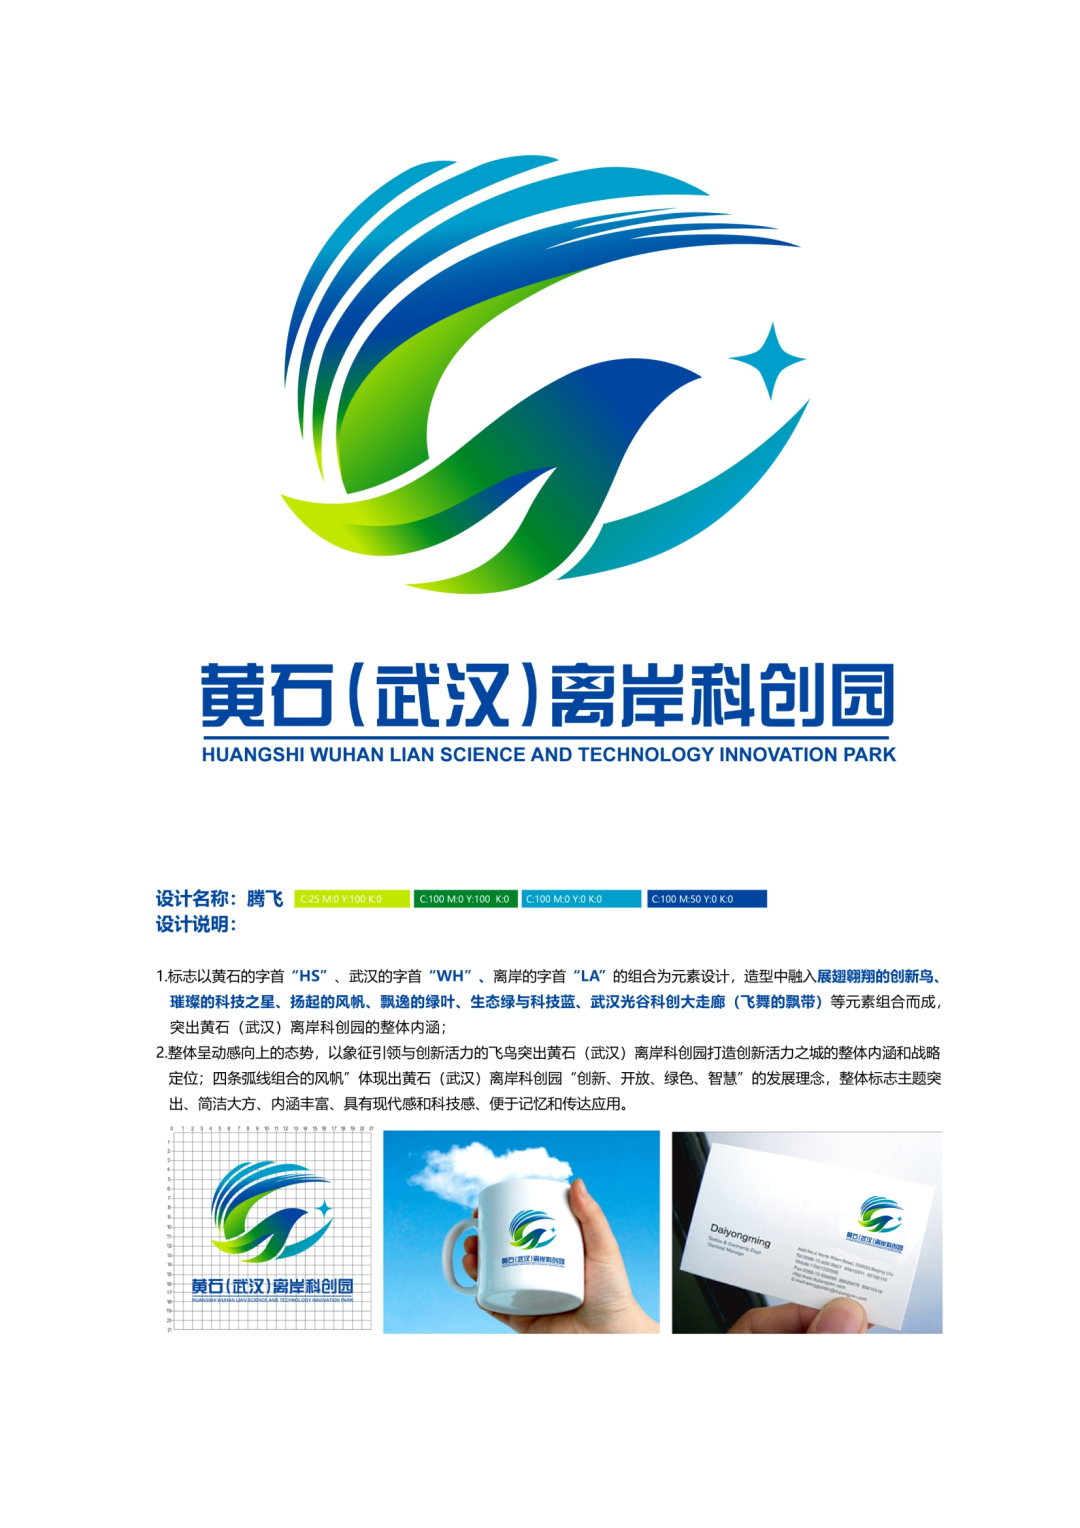 黄石(武汉)离岸科创园logo征集活动入围作品的公告